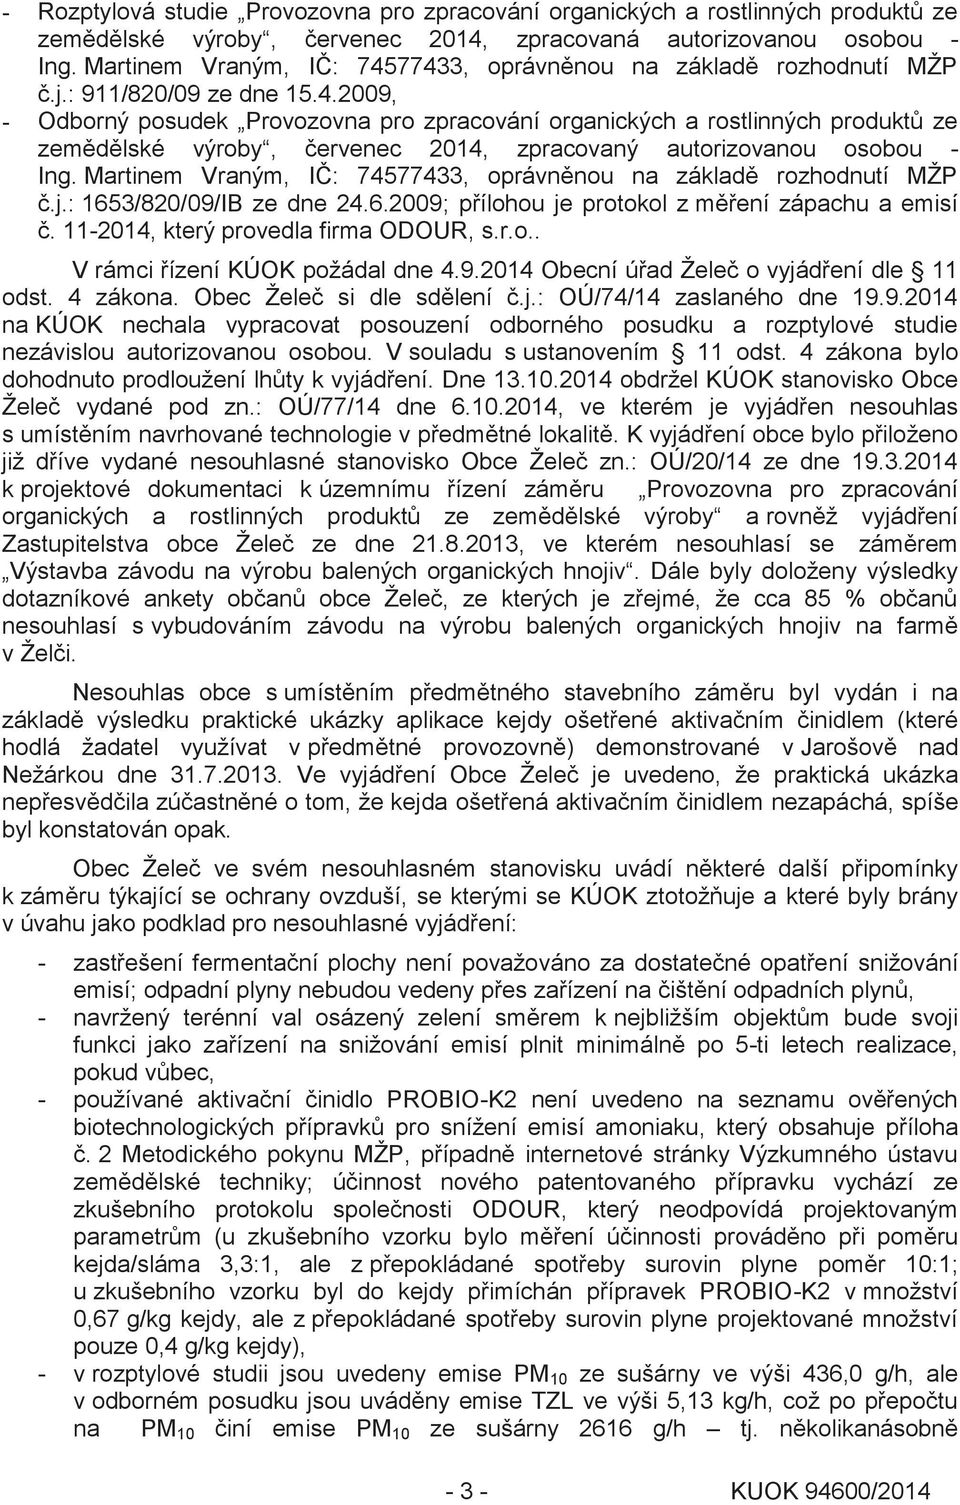 Martinem Vraným, IČ: 74577433, oprávněnou na základě rozhodnutí MŽP č.j.: 1653/820/09/IB ze dne 24.6.2009; přílohou je protokol z měření zápachu a emisí č. 11-2014, který provedla firma ODOUR, s.r.o.. V rámci řízení KÚOK požádal dne 4.